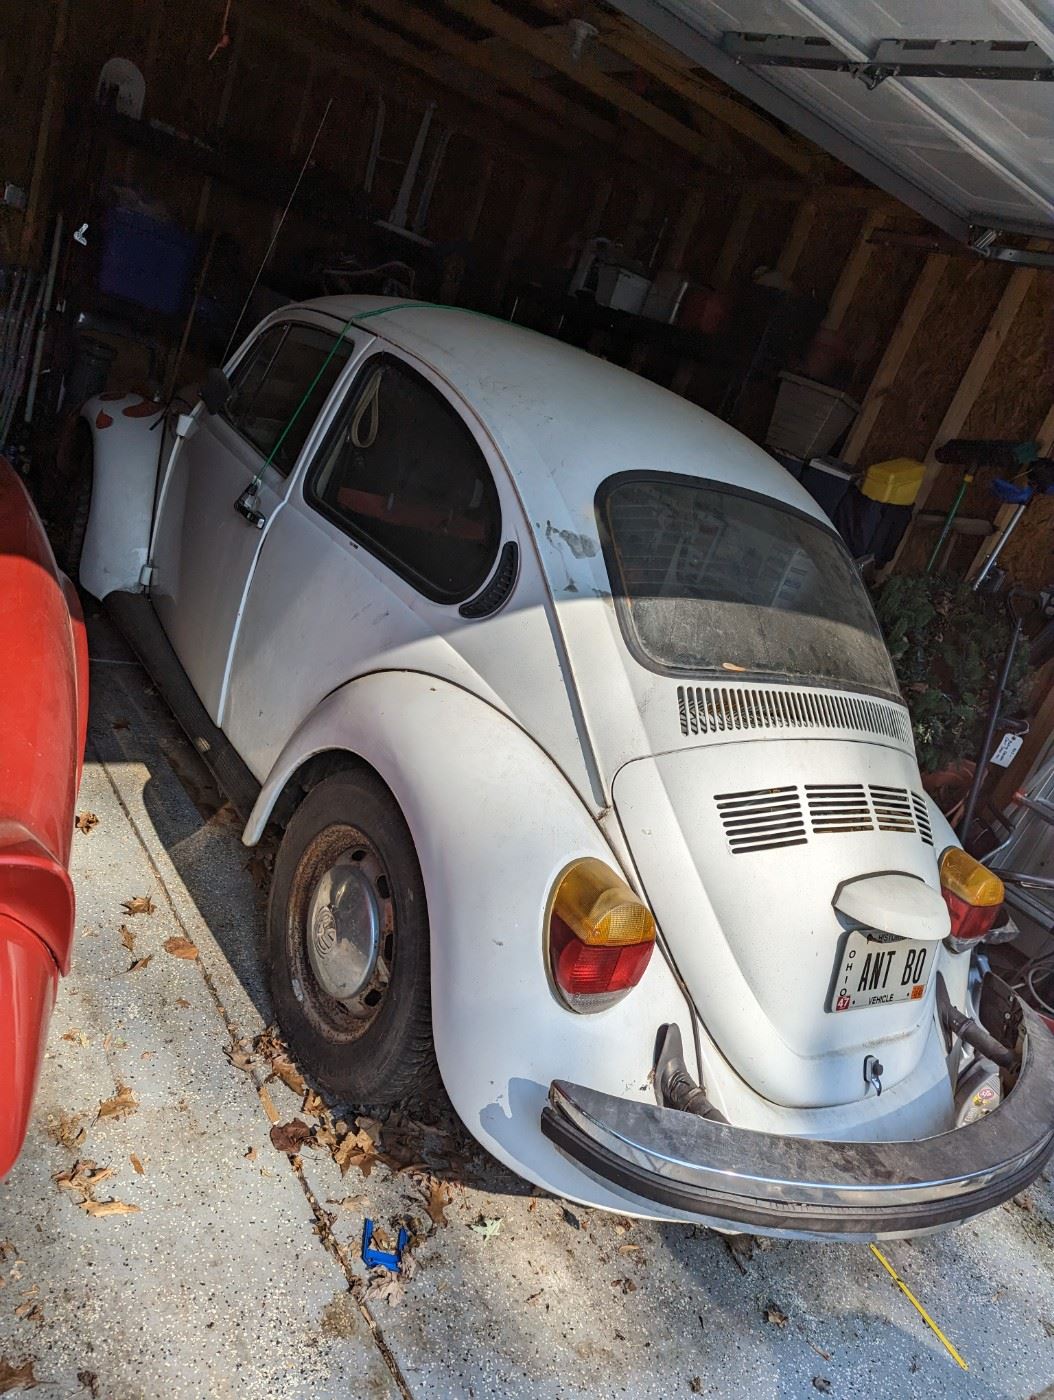 1977 VW Beetle! 4 speed.  I will consider bids till Saturday 1 pm.